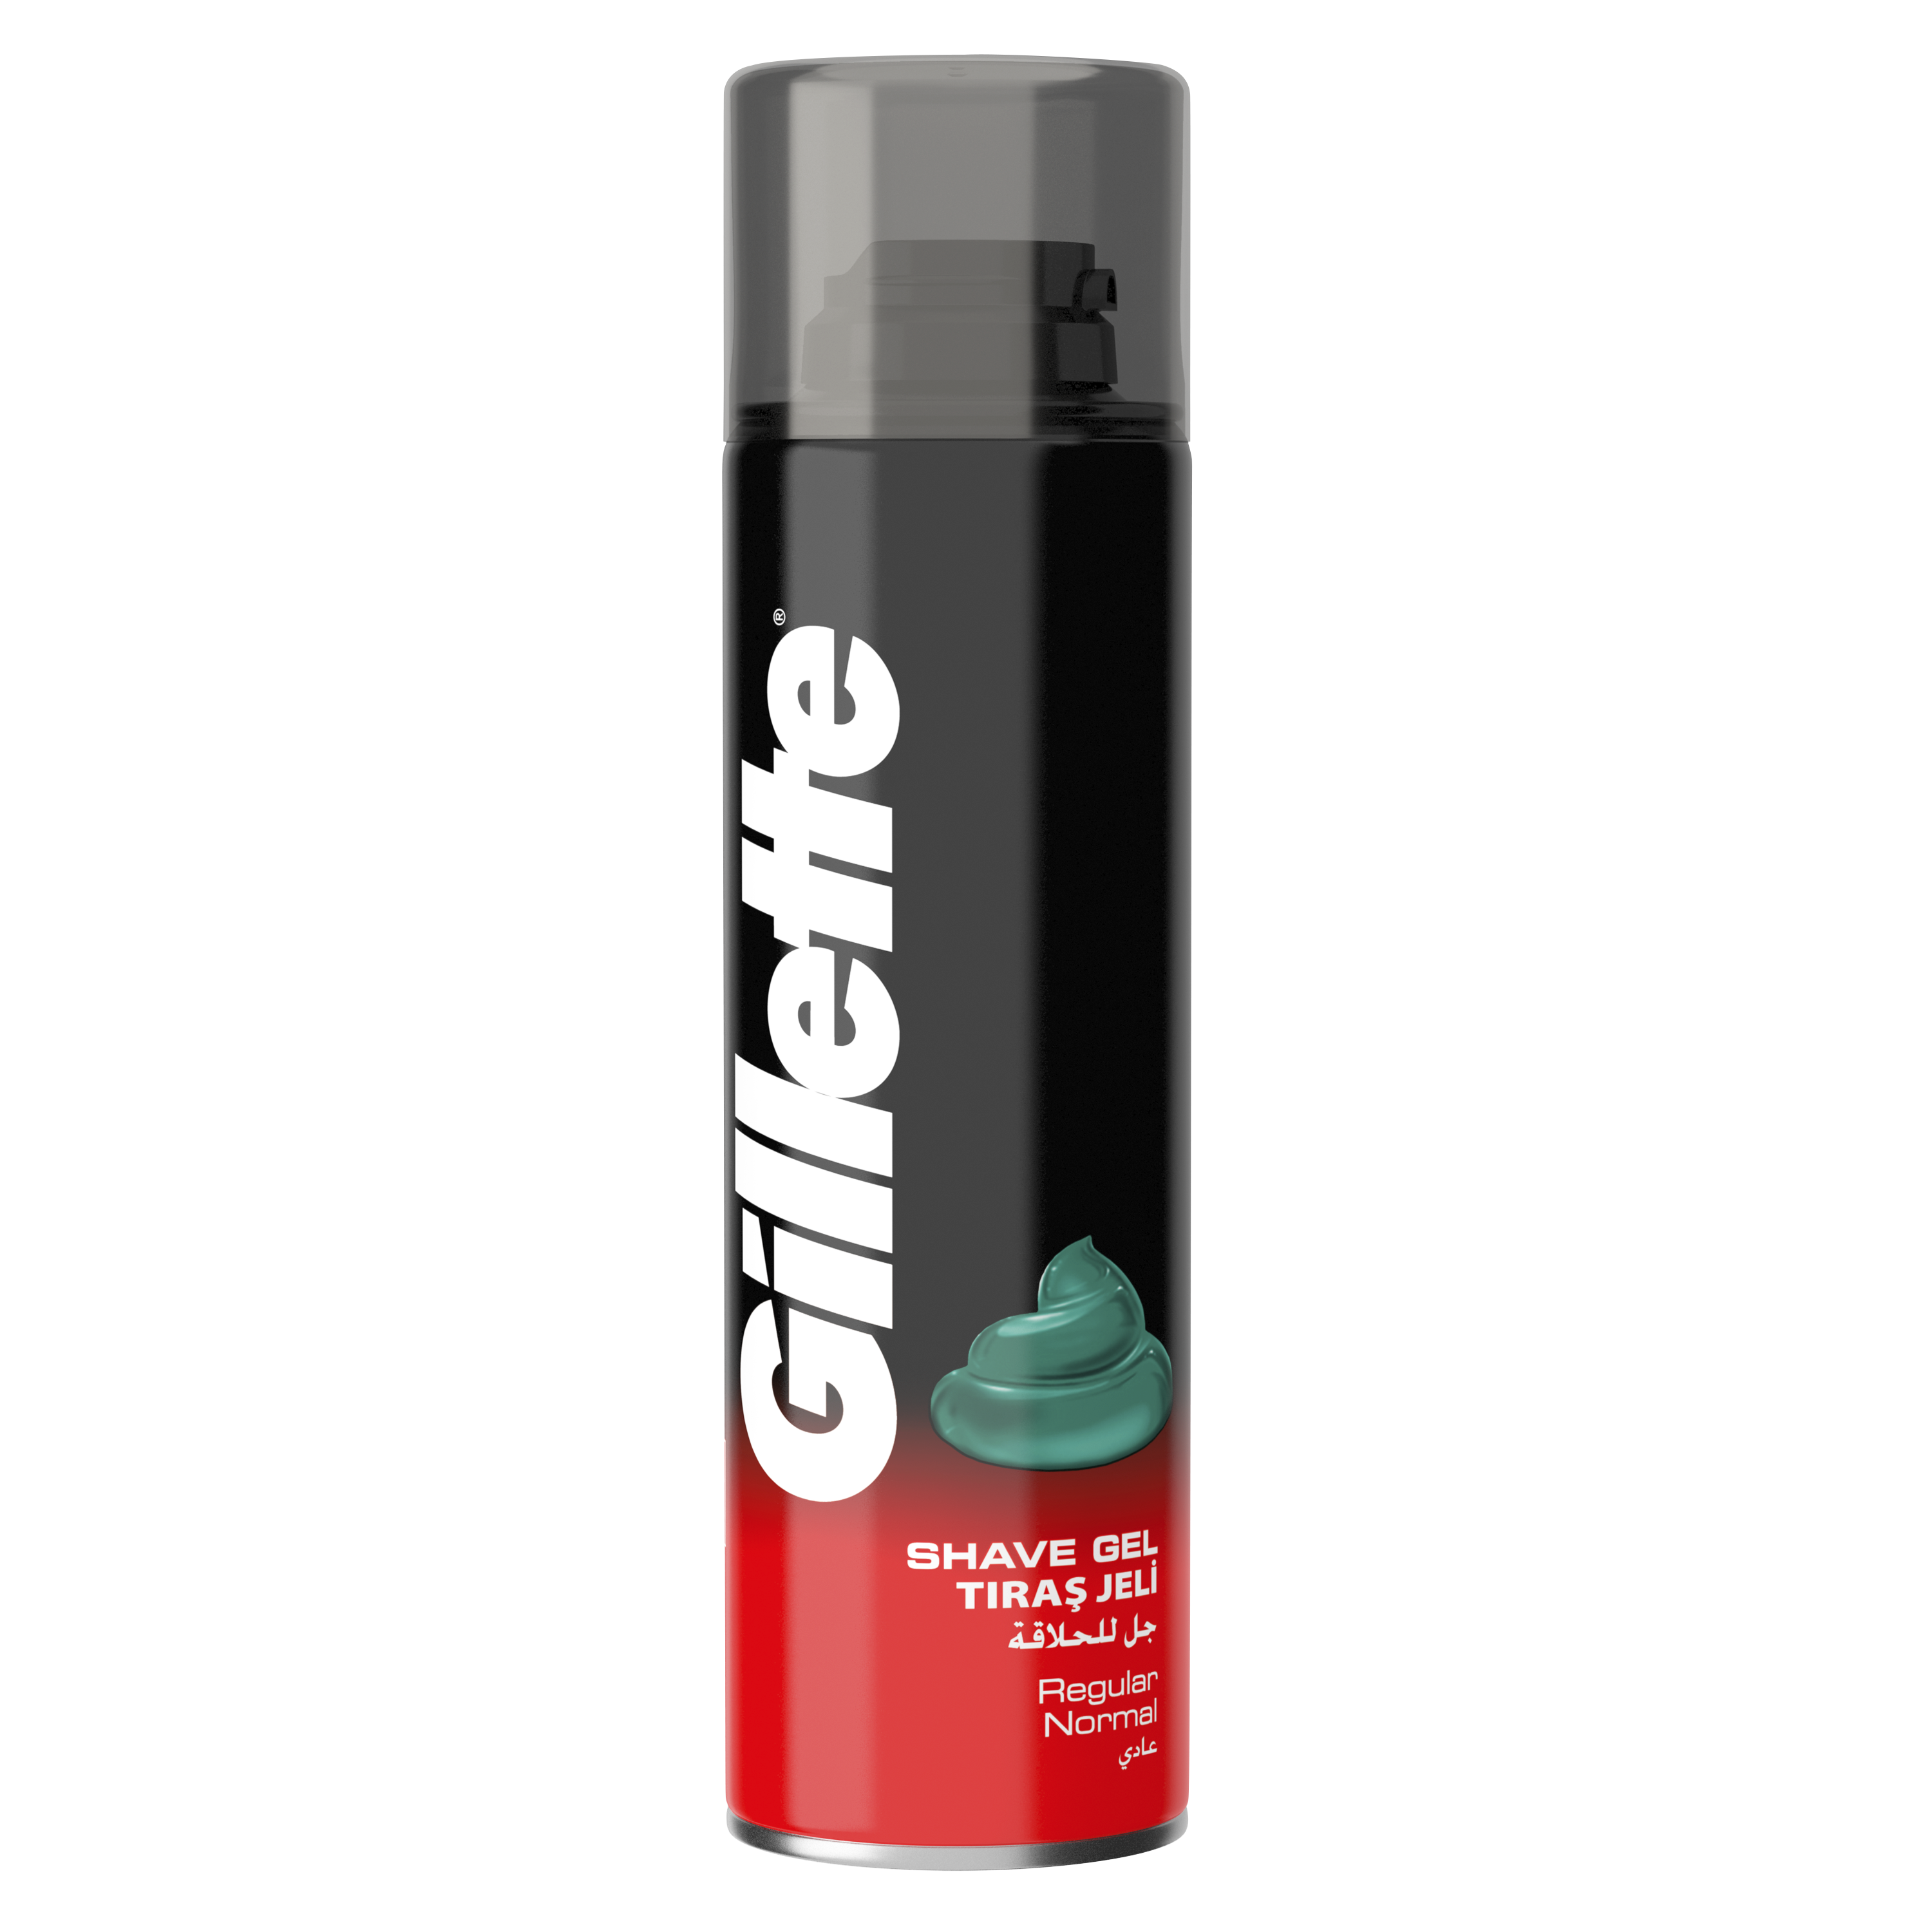 Гель для бритья Gillette Regular, 200 мл - фото 2